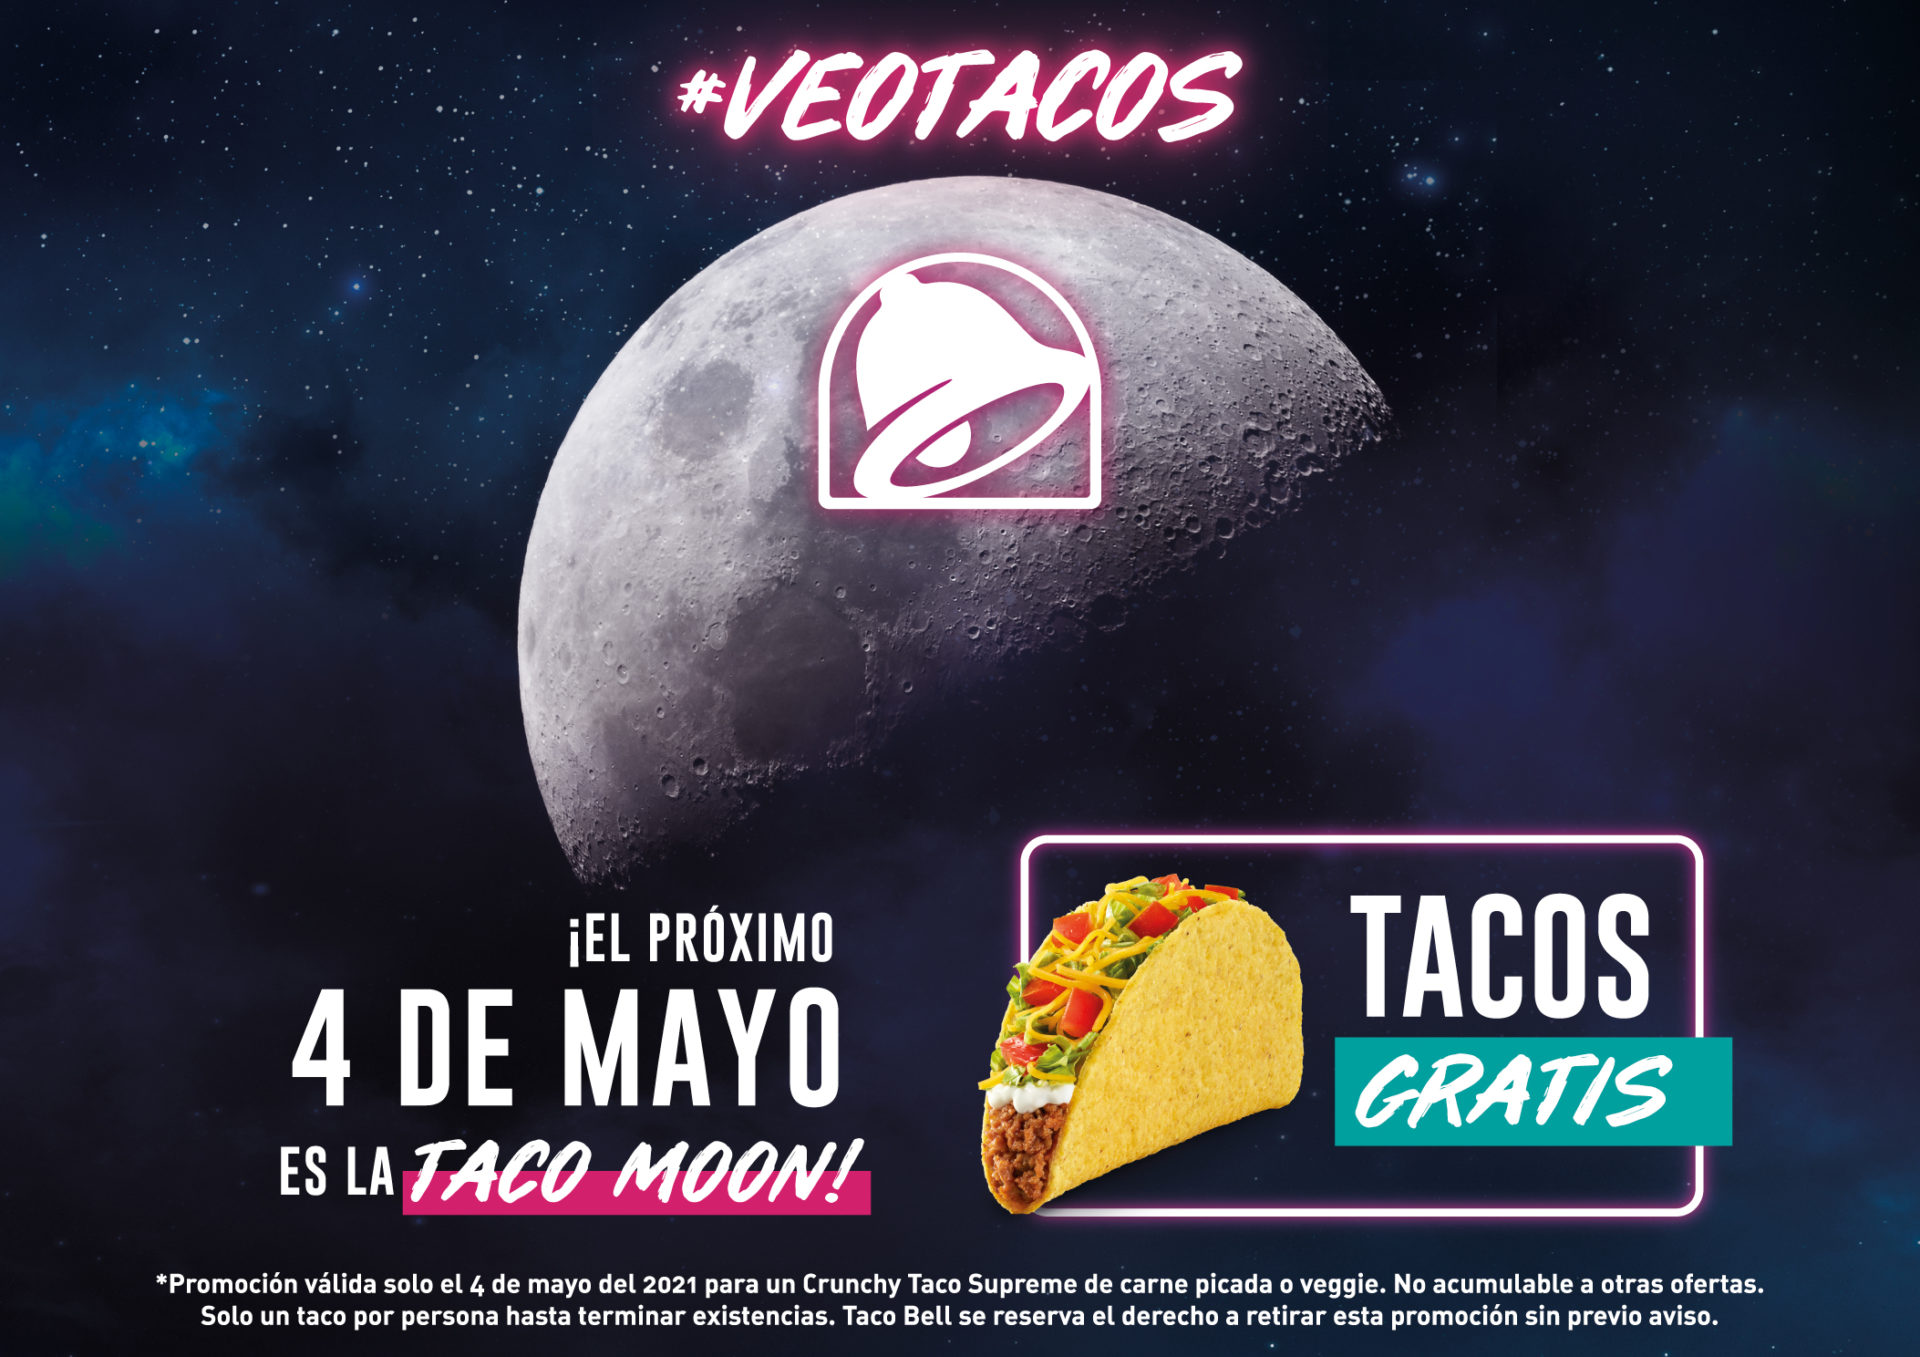 El martes 4 de mayo Taco Bell celebra la “Taco Moon”.